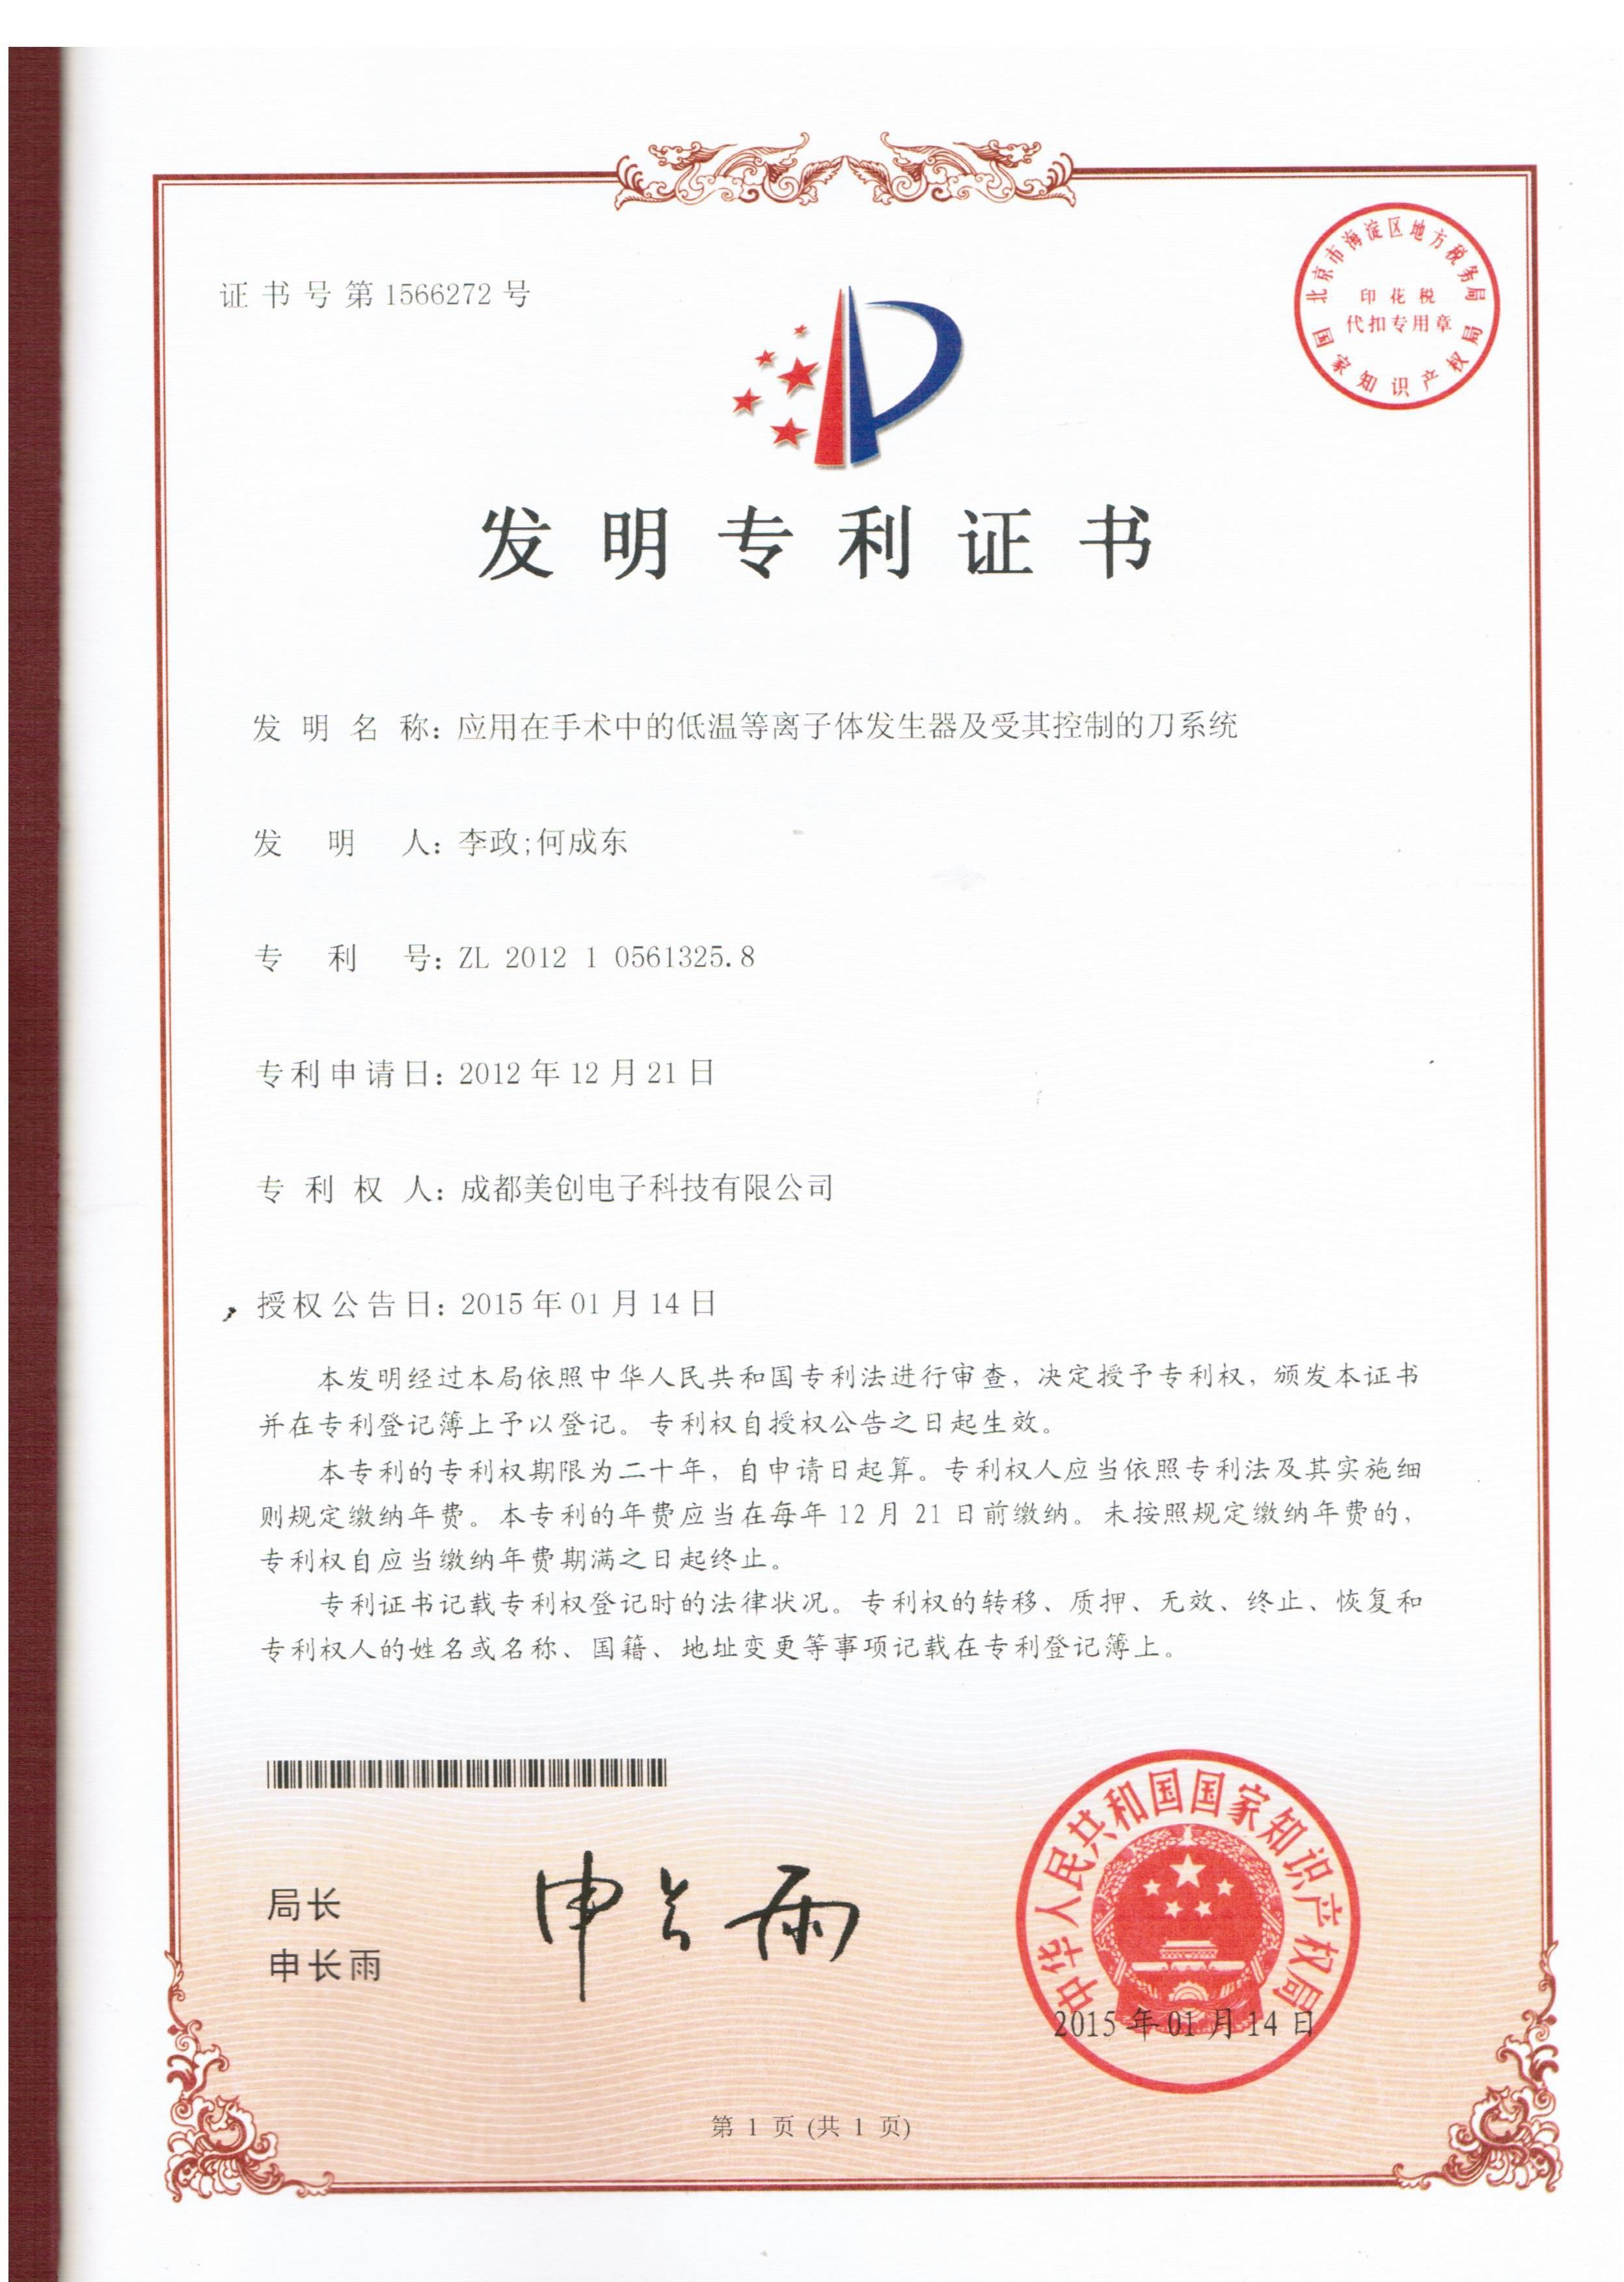 চীন Chengdu Mechan Electronic Technology Co., Ltd সার্টিফিকেশন